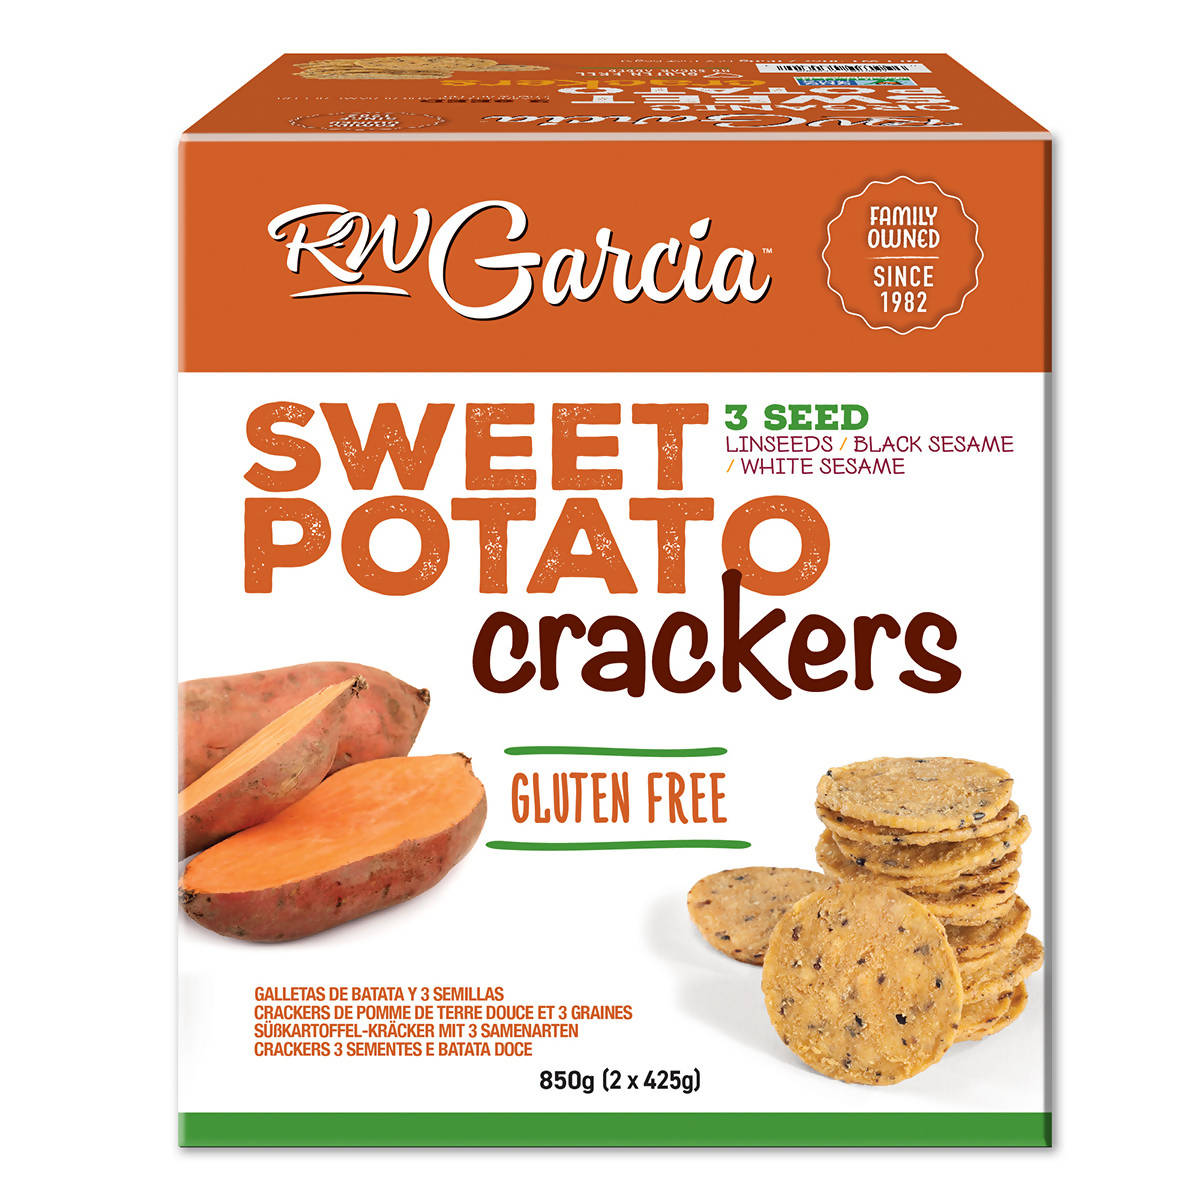 RW Garcia 3 Seed Sweet Potato Crackers, 850g Snacks Costco UK   